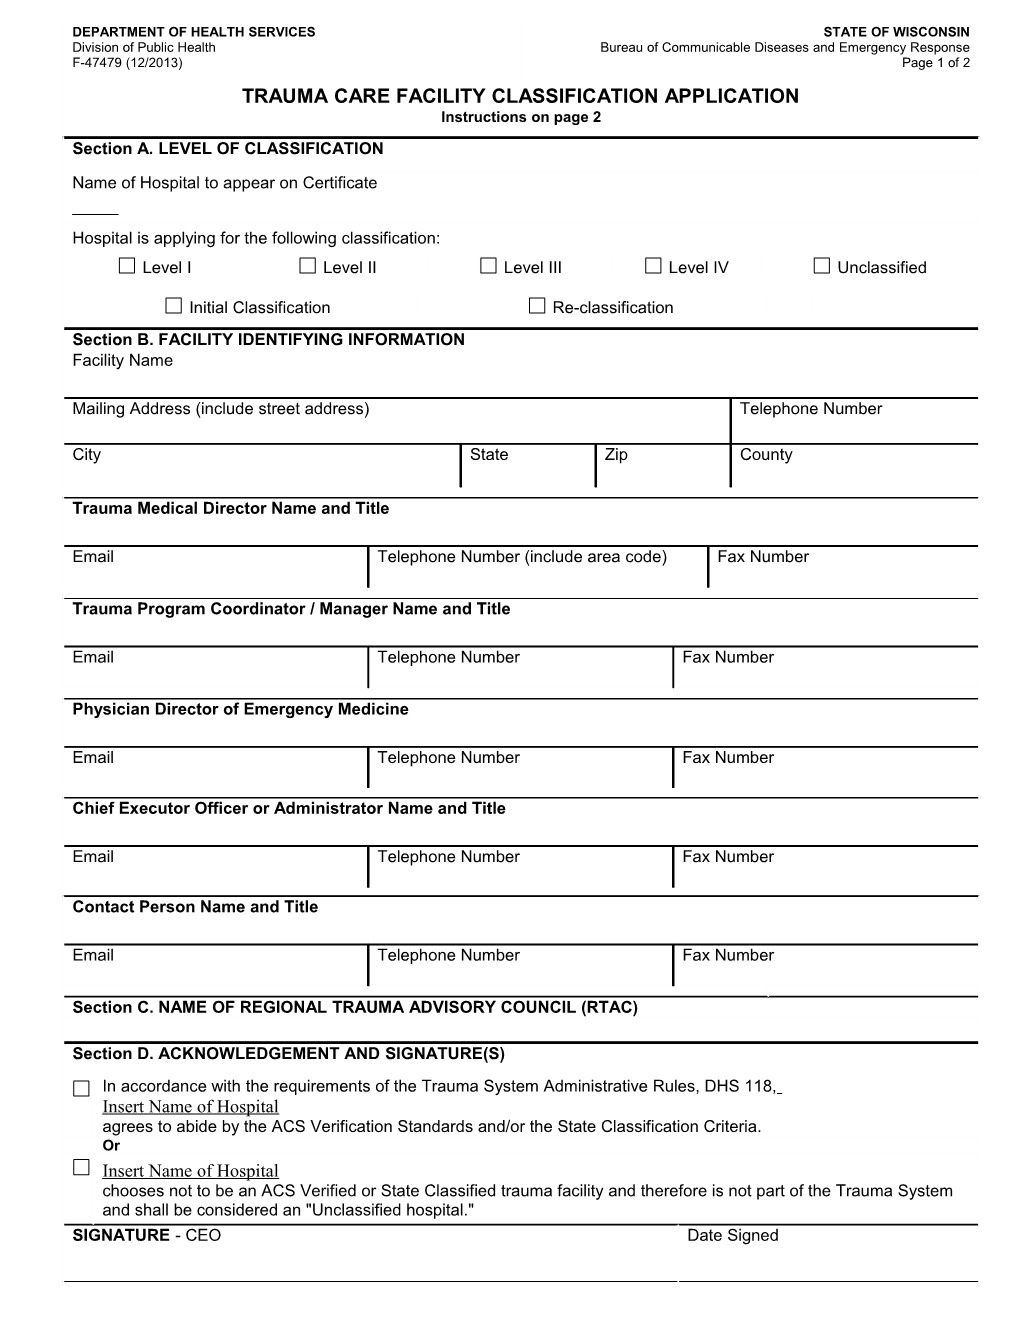 Trauma Care Facility Classification Application